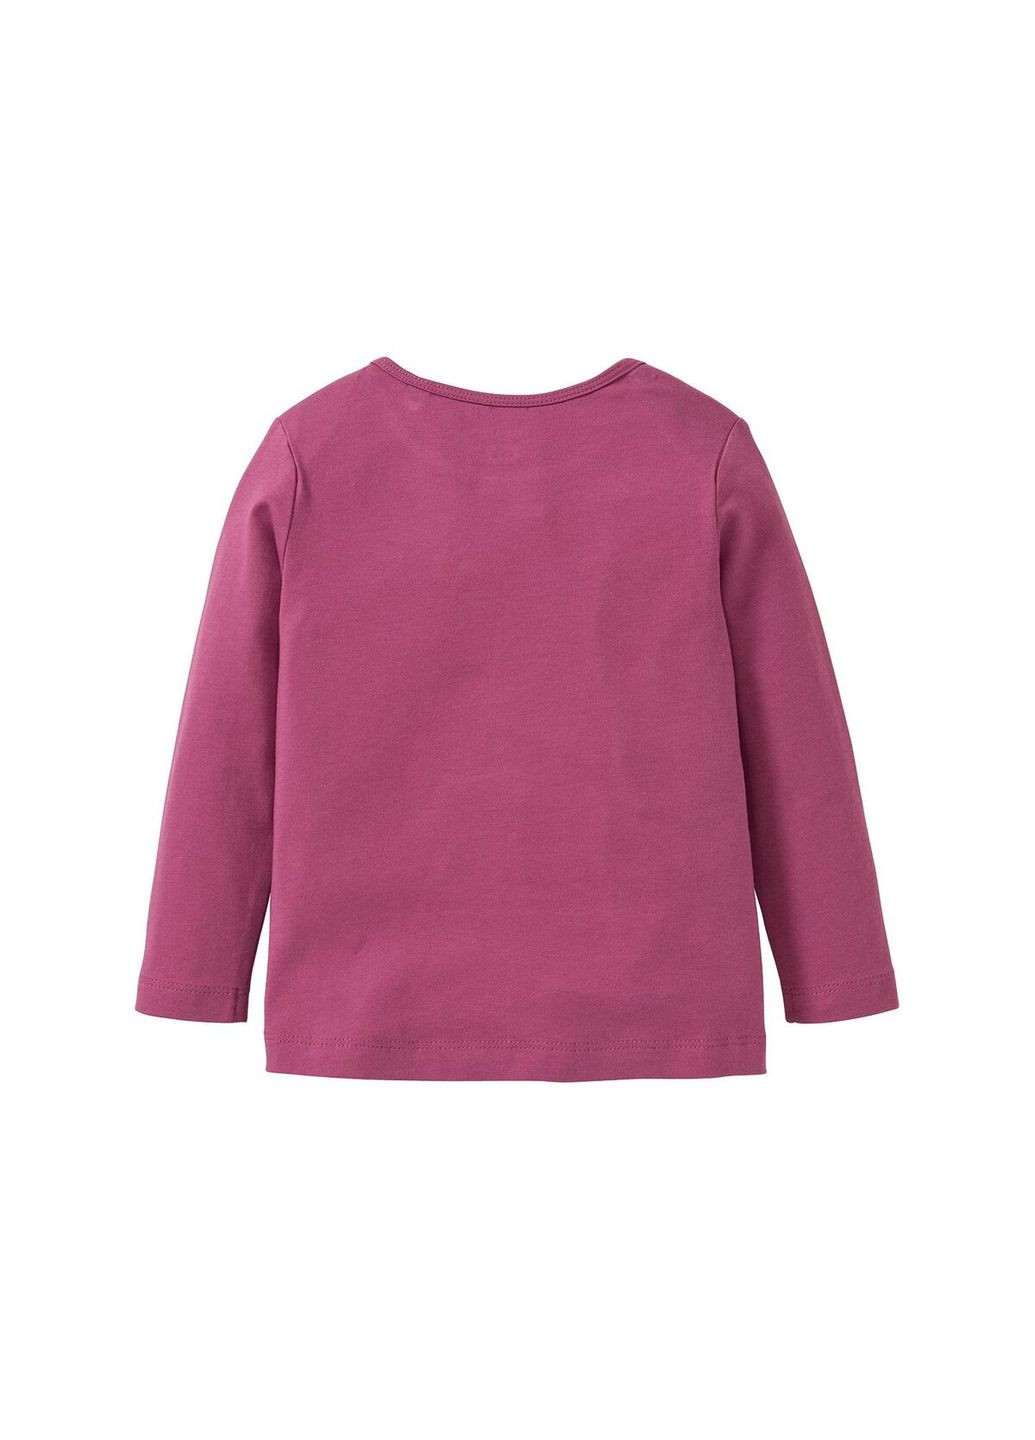 Малинова піжама (лонгслів і штани) для дівчинки 308593 малиновий (темно-рожевий) Lupilu